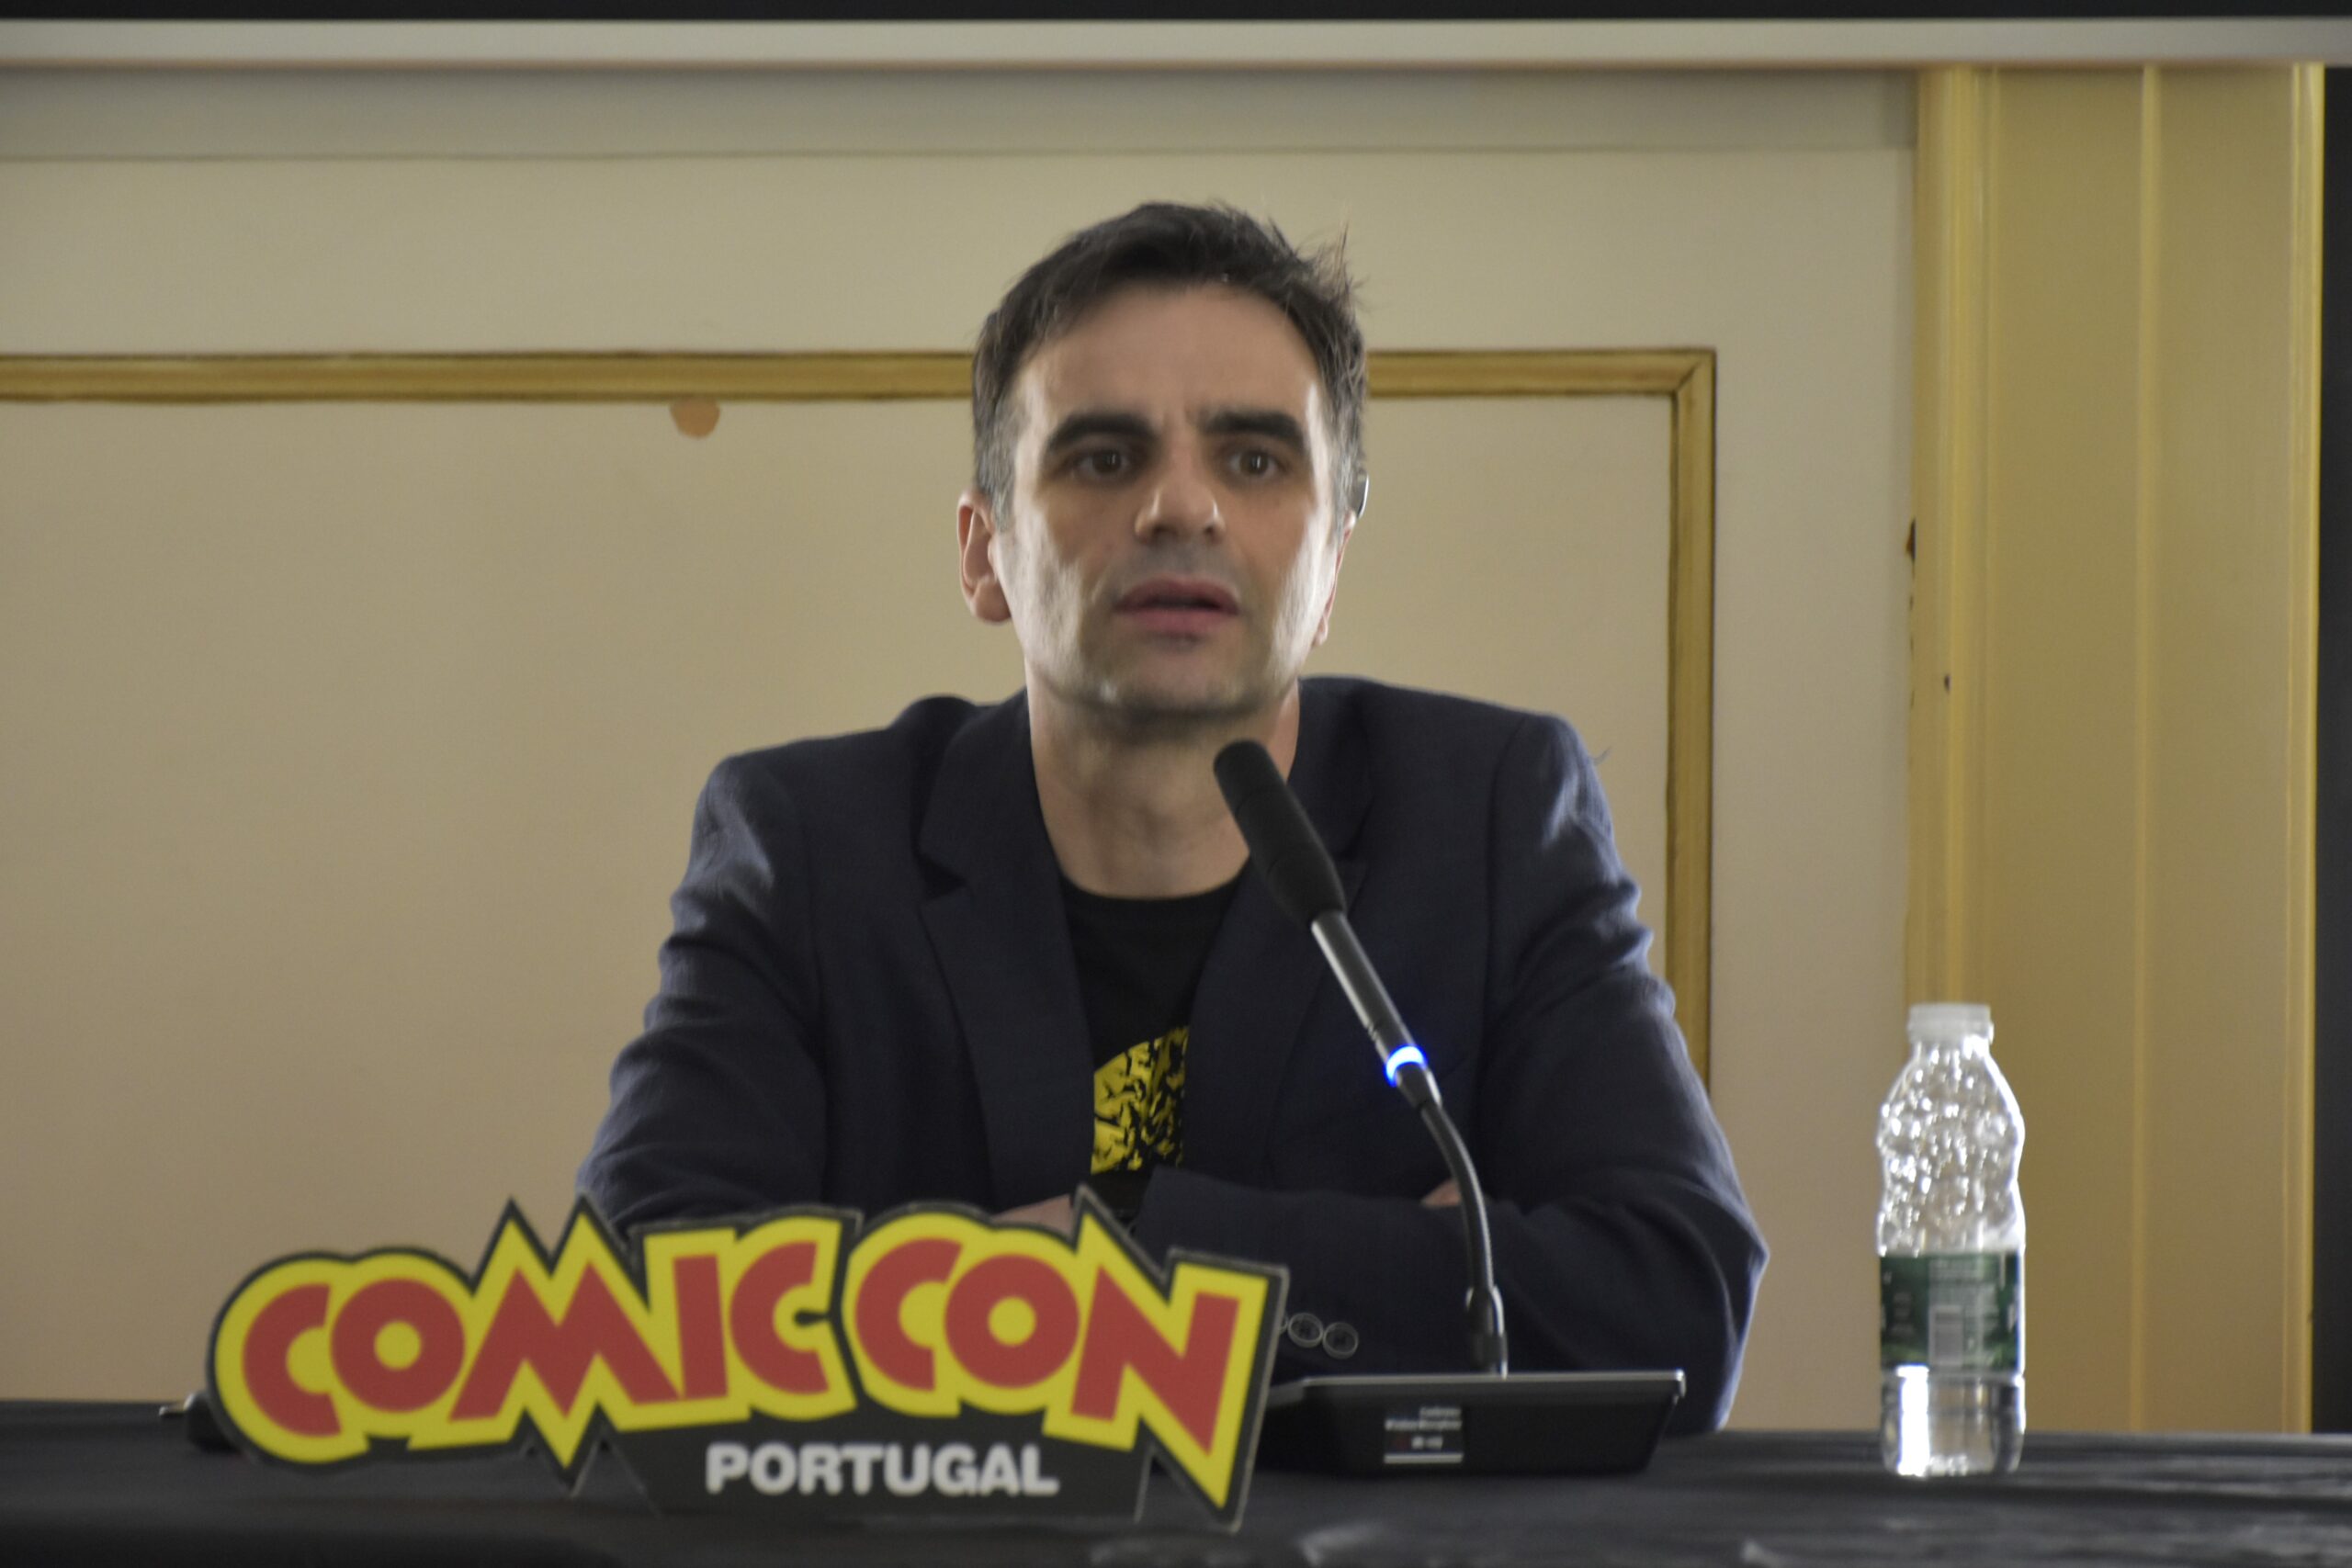 Paulo Rocha Cardoso, Comic Con Portugal